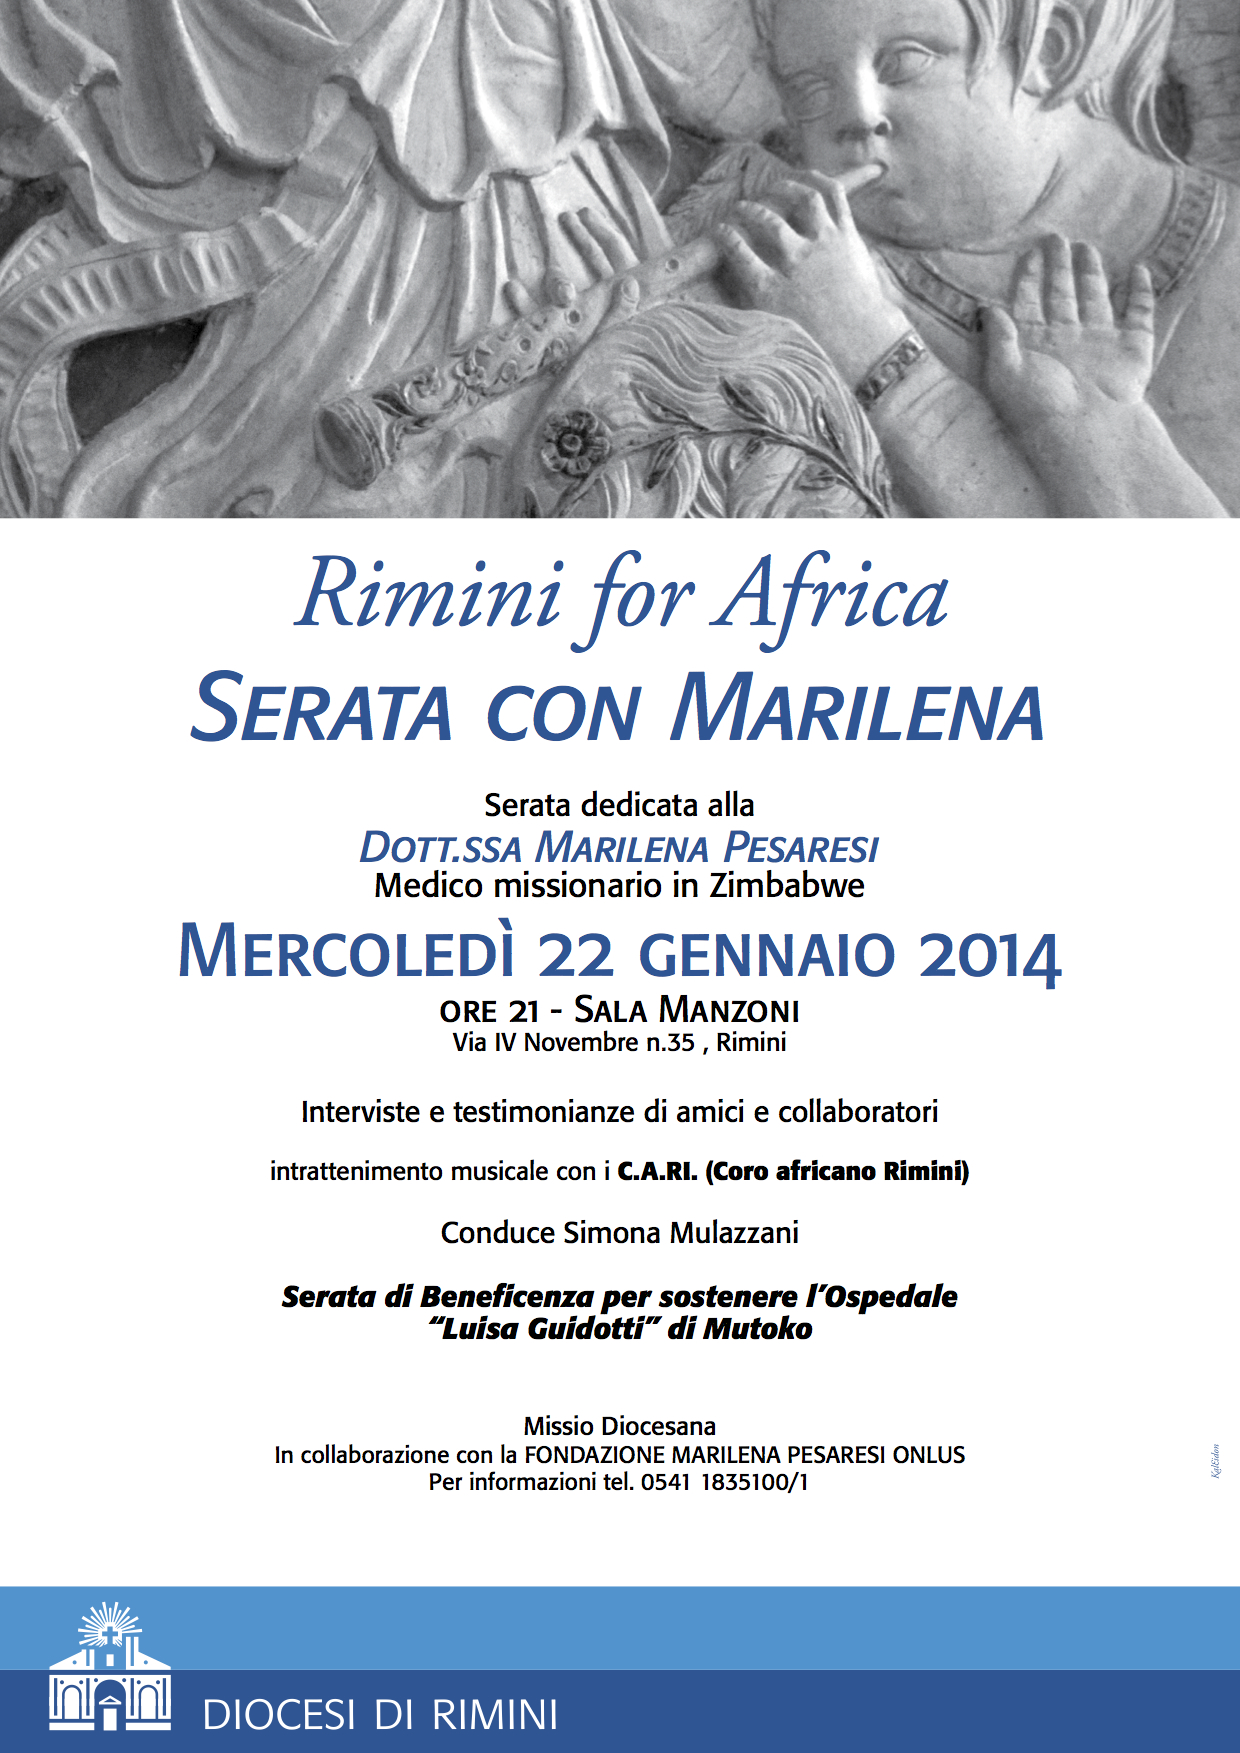 Rimini for Africa 2014